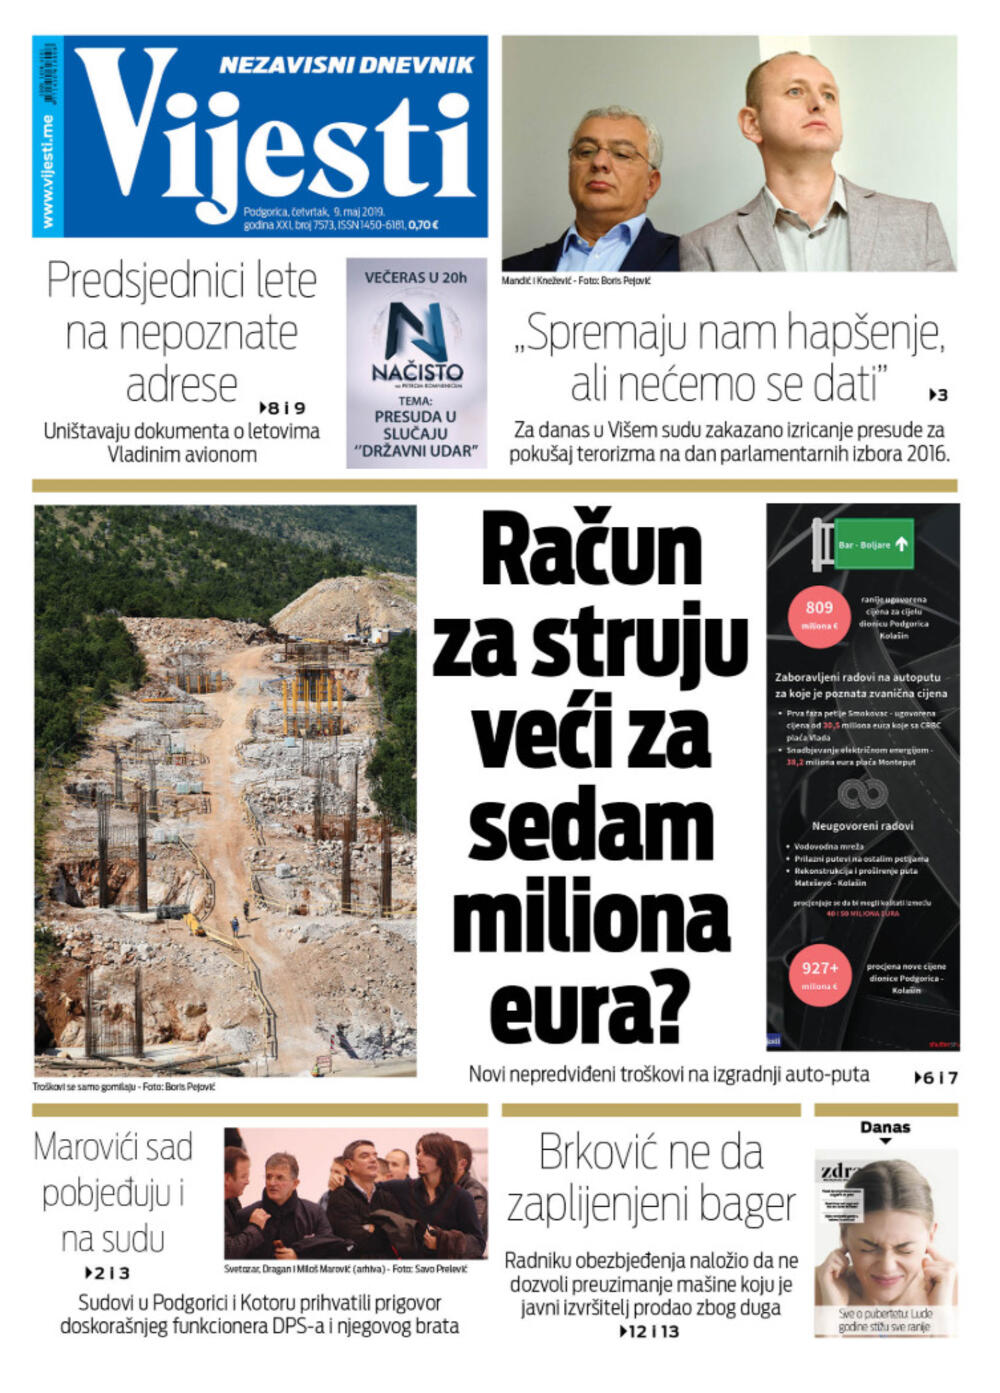 Naslovna strana "Vijesti" za 9. maj, Foto: Vijesti